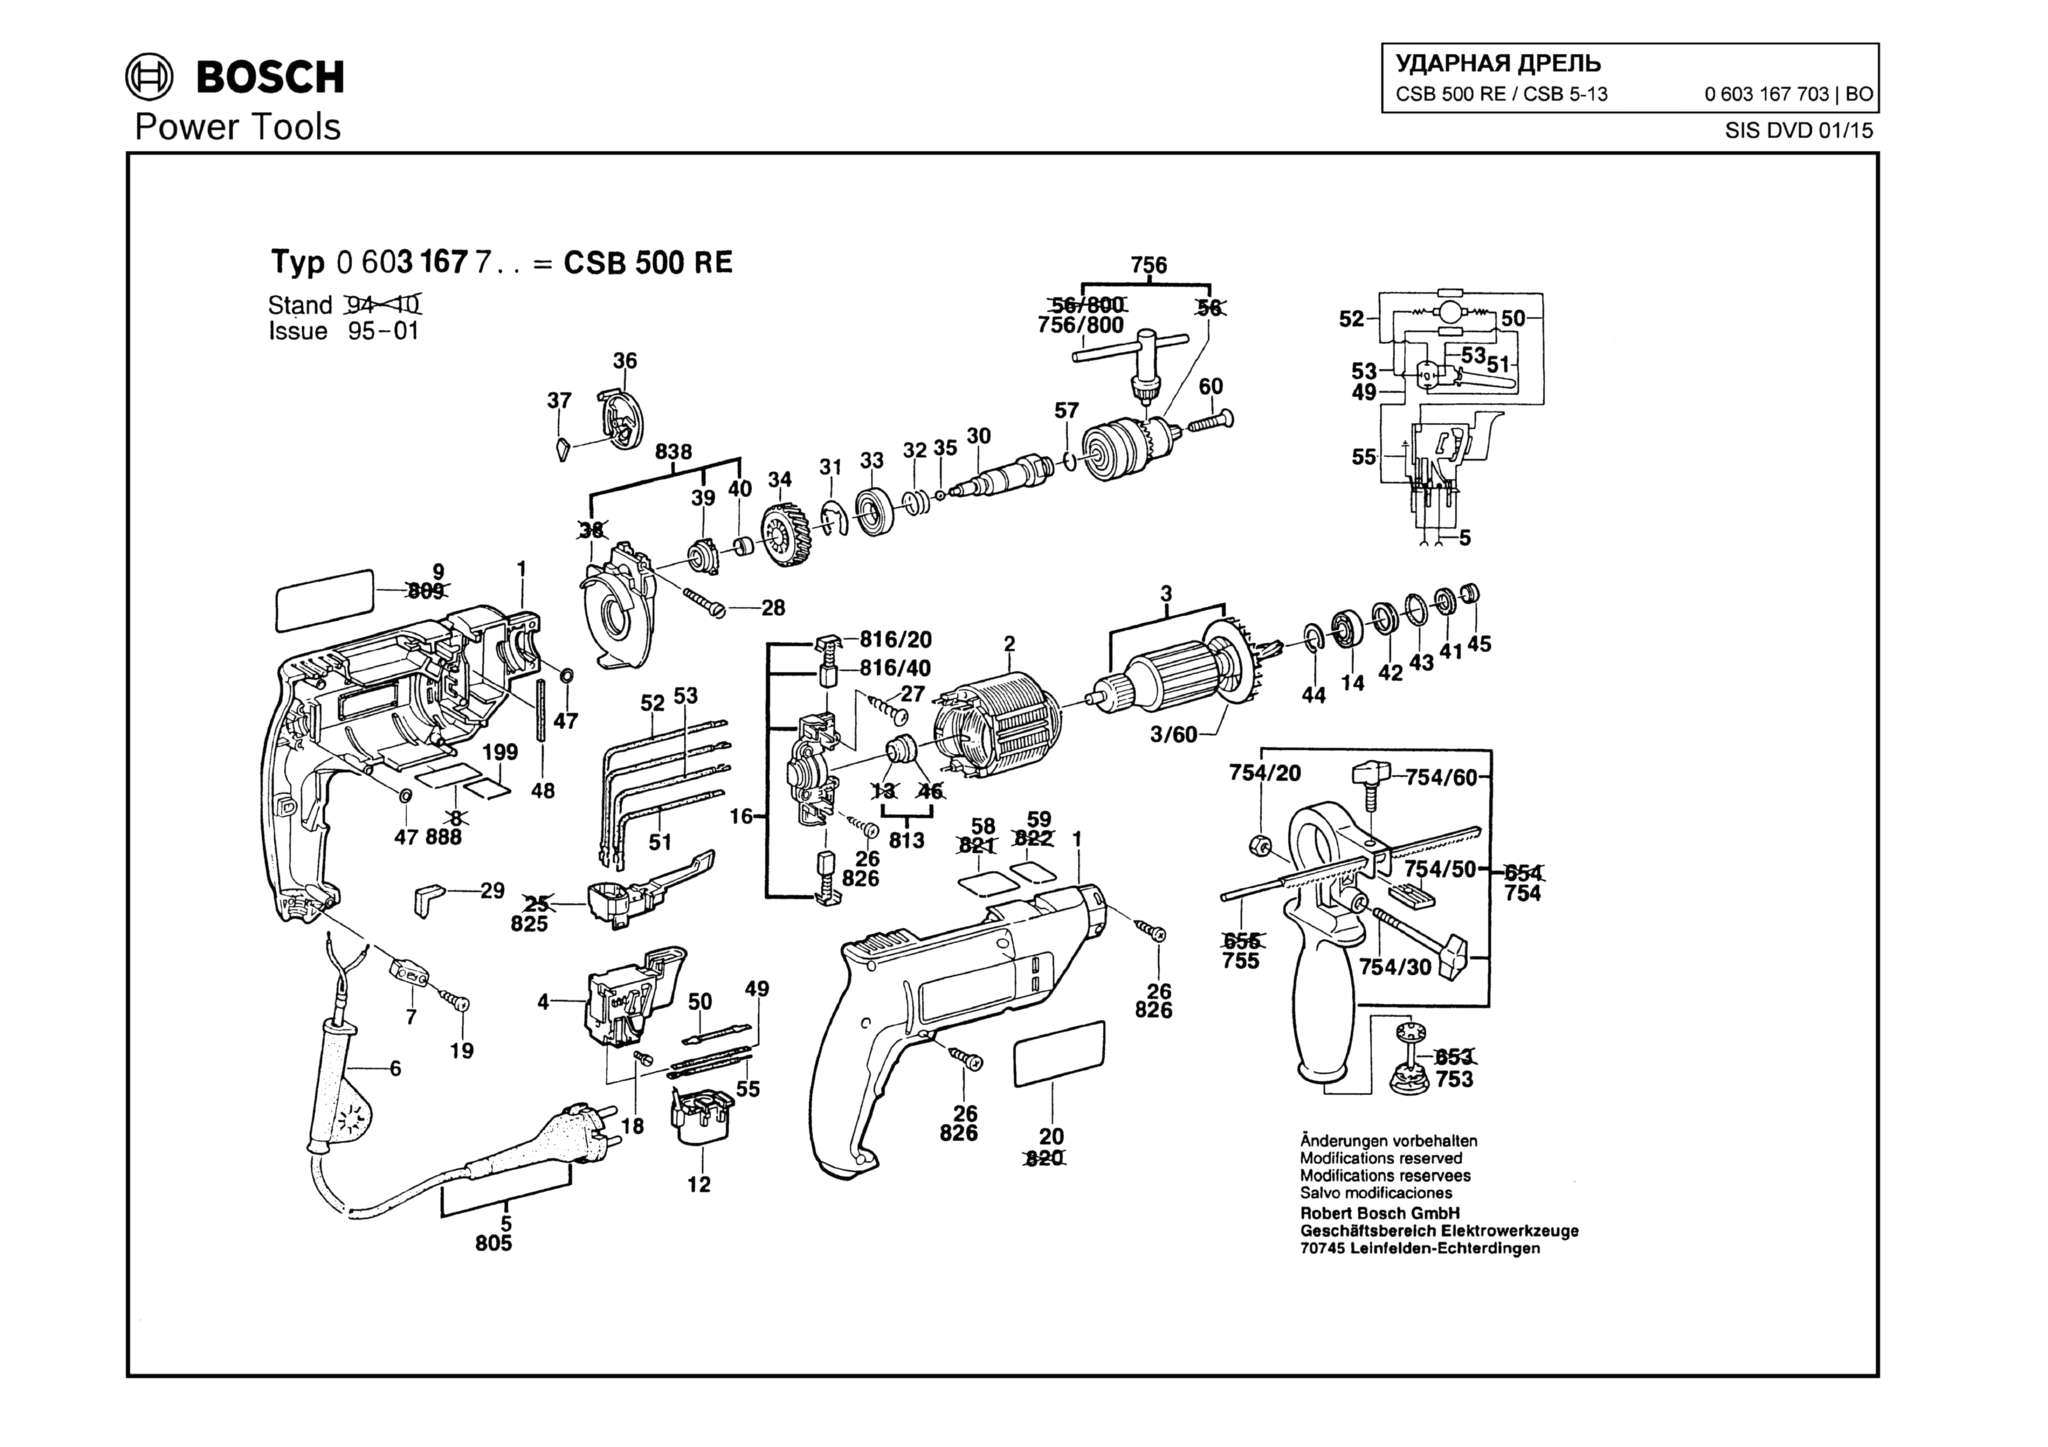 Запчасти, схема и деталировка Bosch CSB 500 RE/CSB 5-13 RE (ТИП 0603167703)